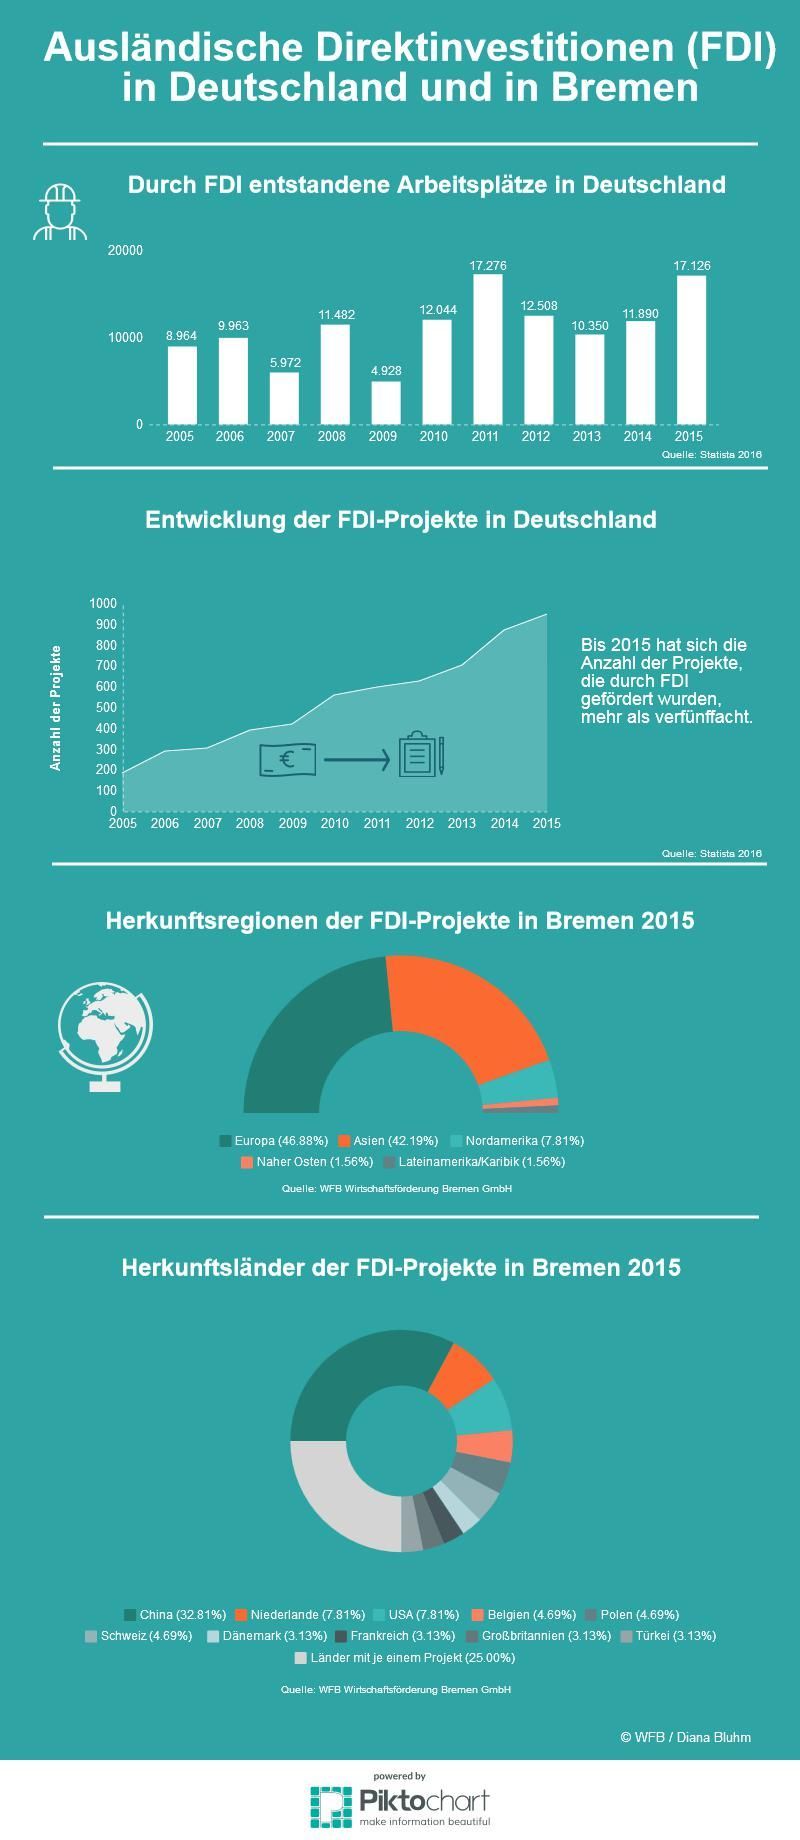 Die Infografik zeigt die positive Bilanz des FDI-Reports für Deutschland und Bremen 2015